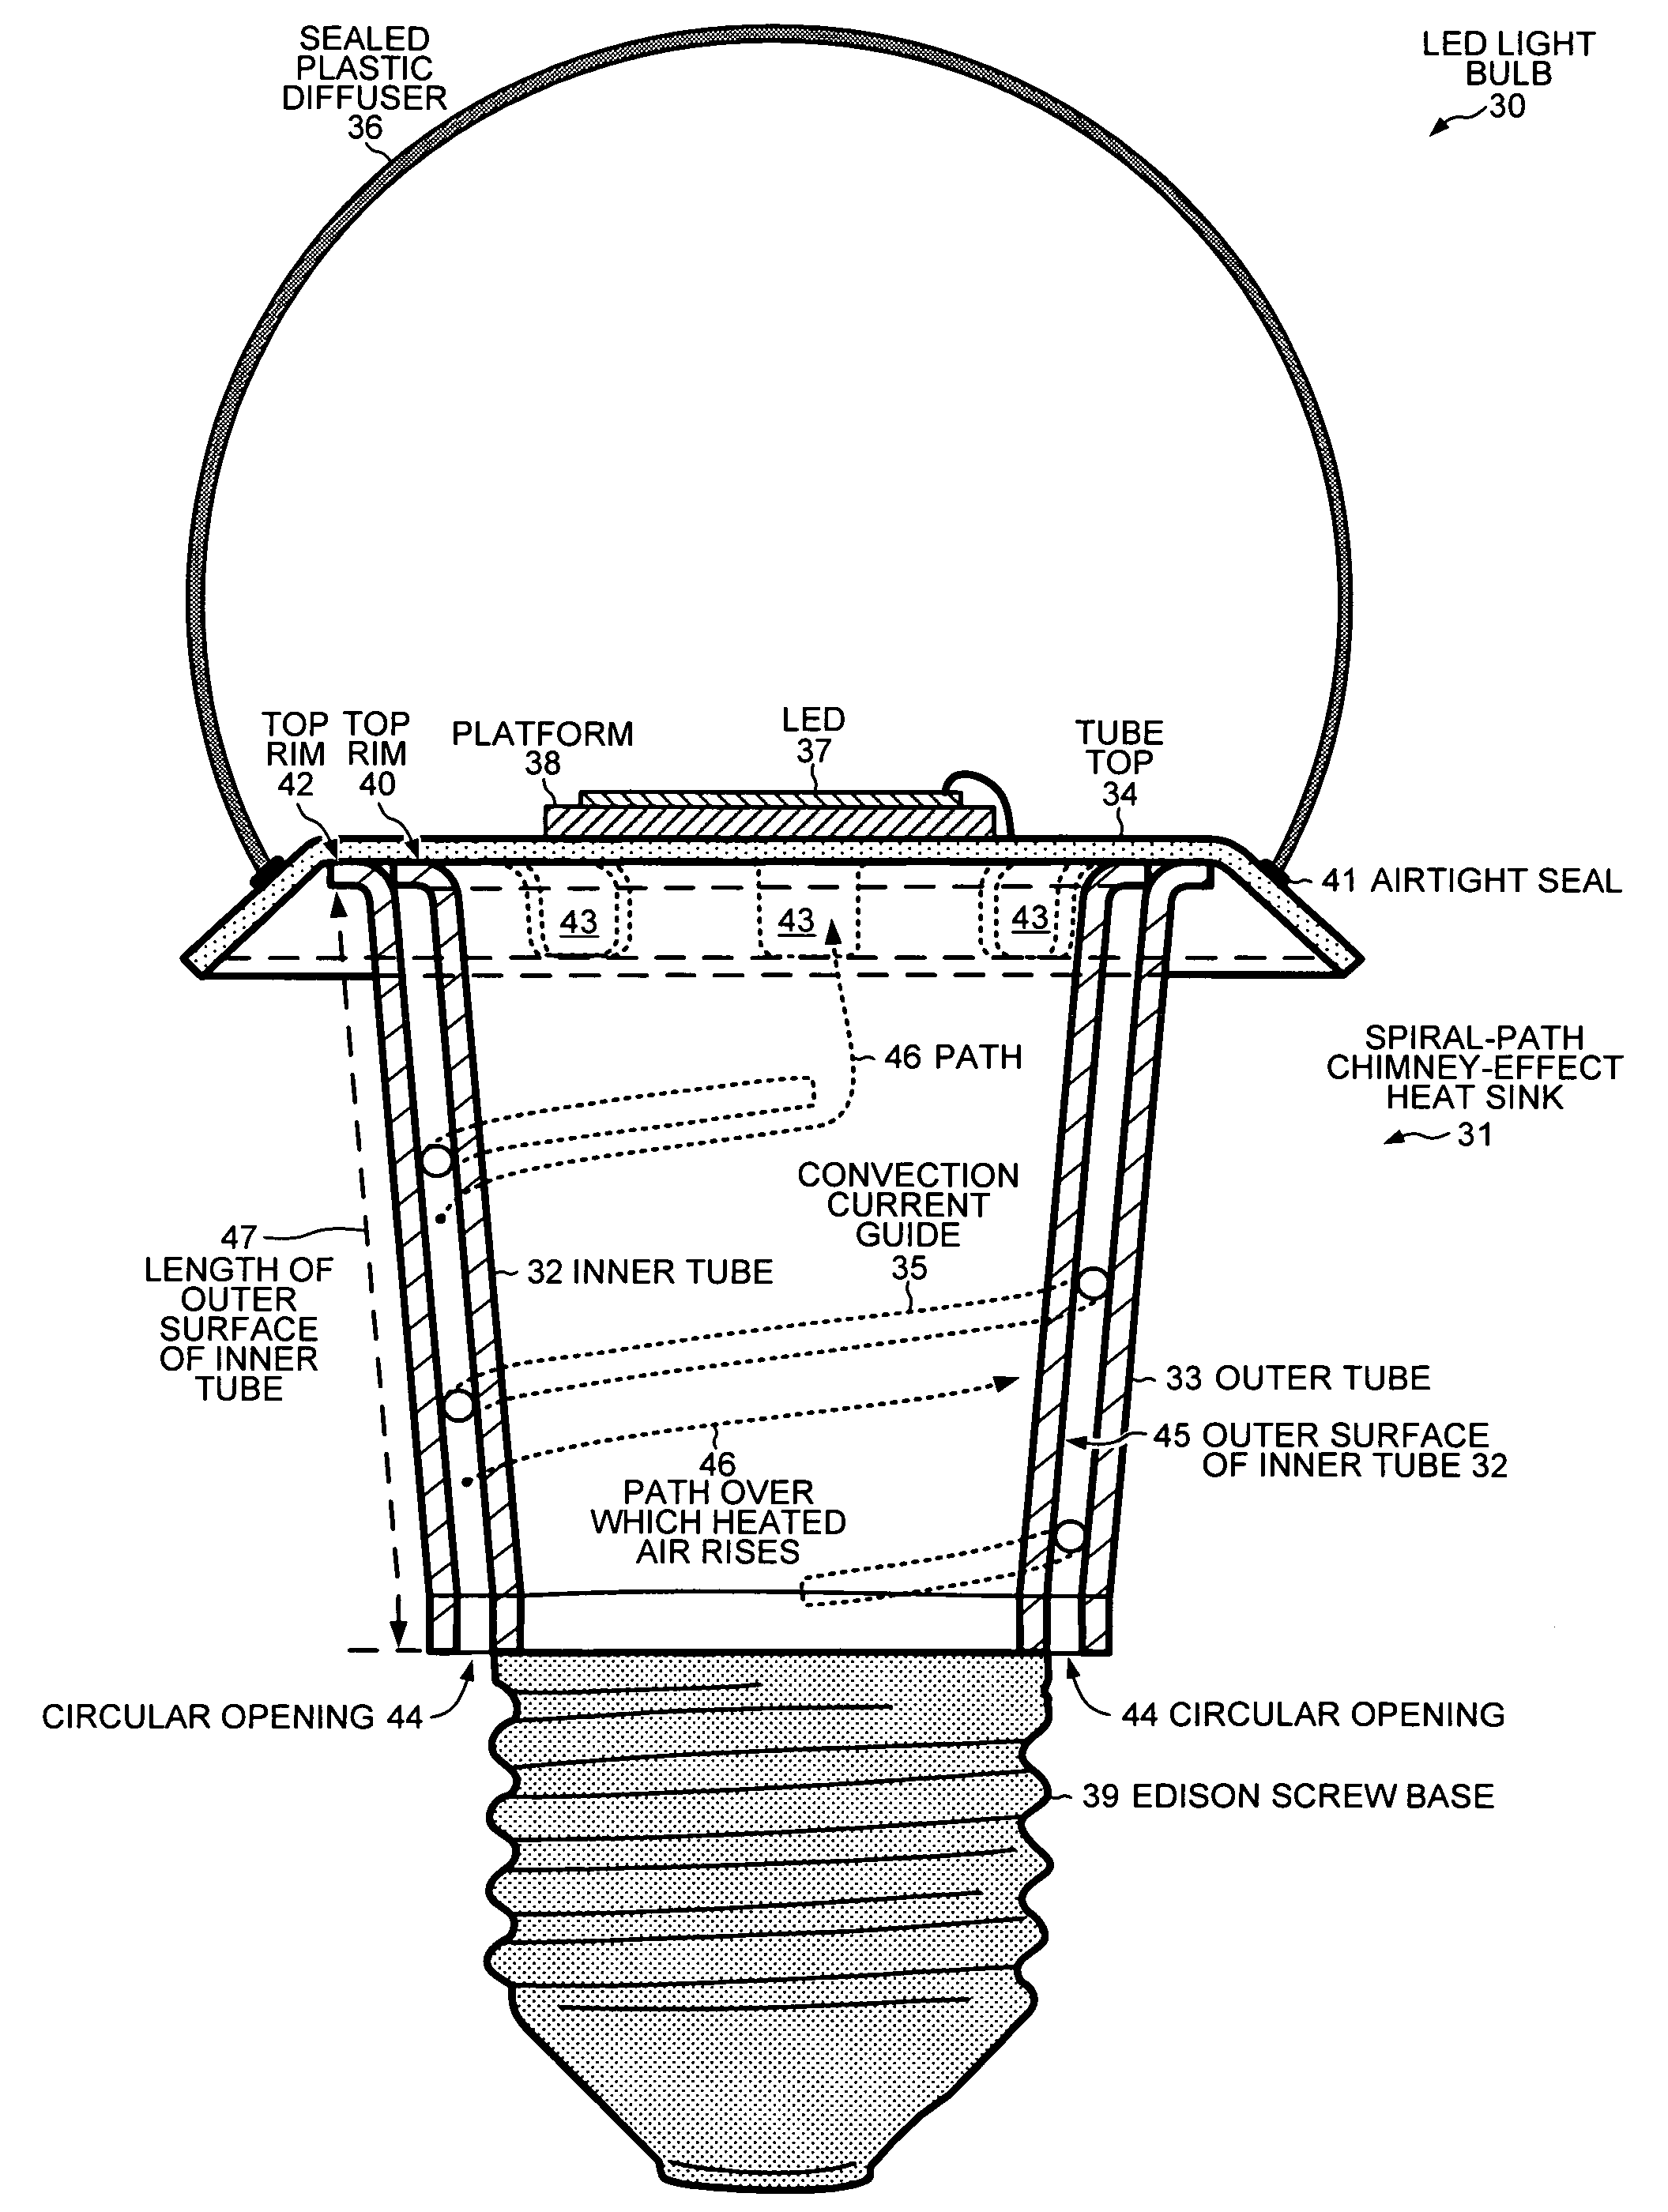 Spiral-path chimney-effect heat sink